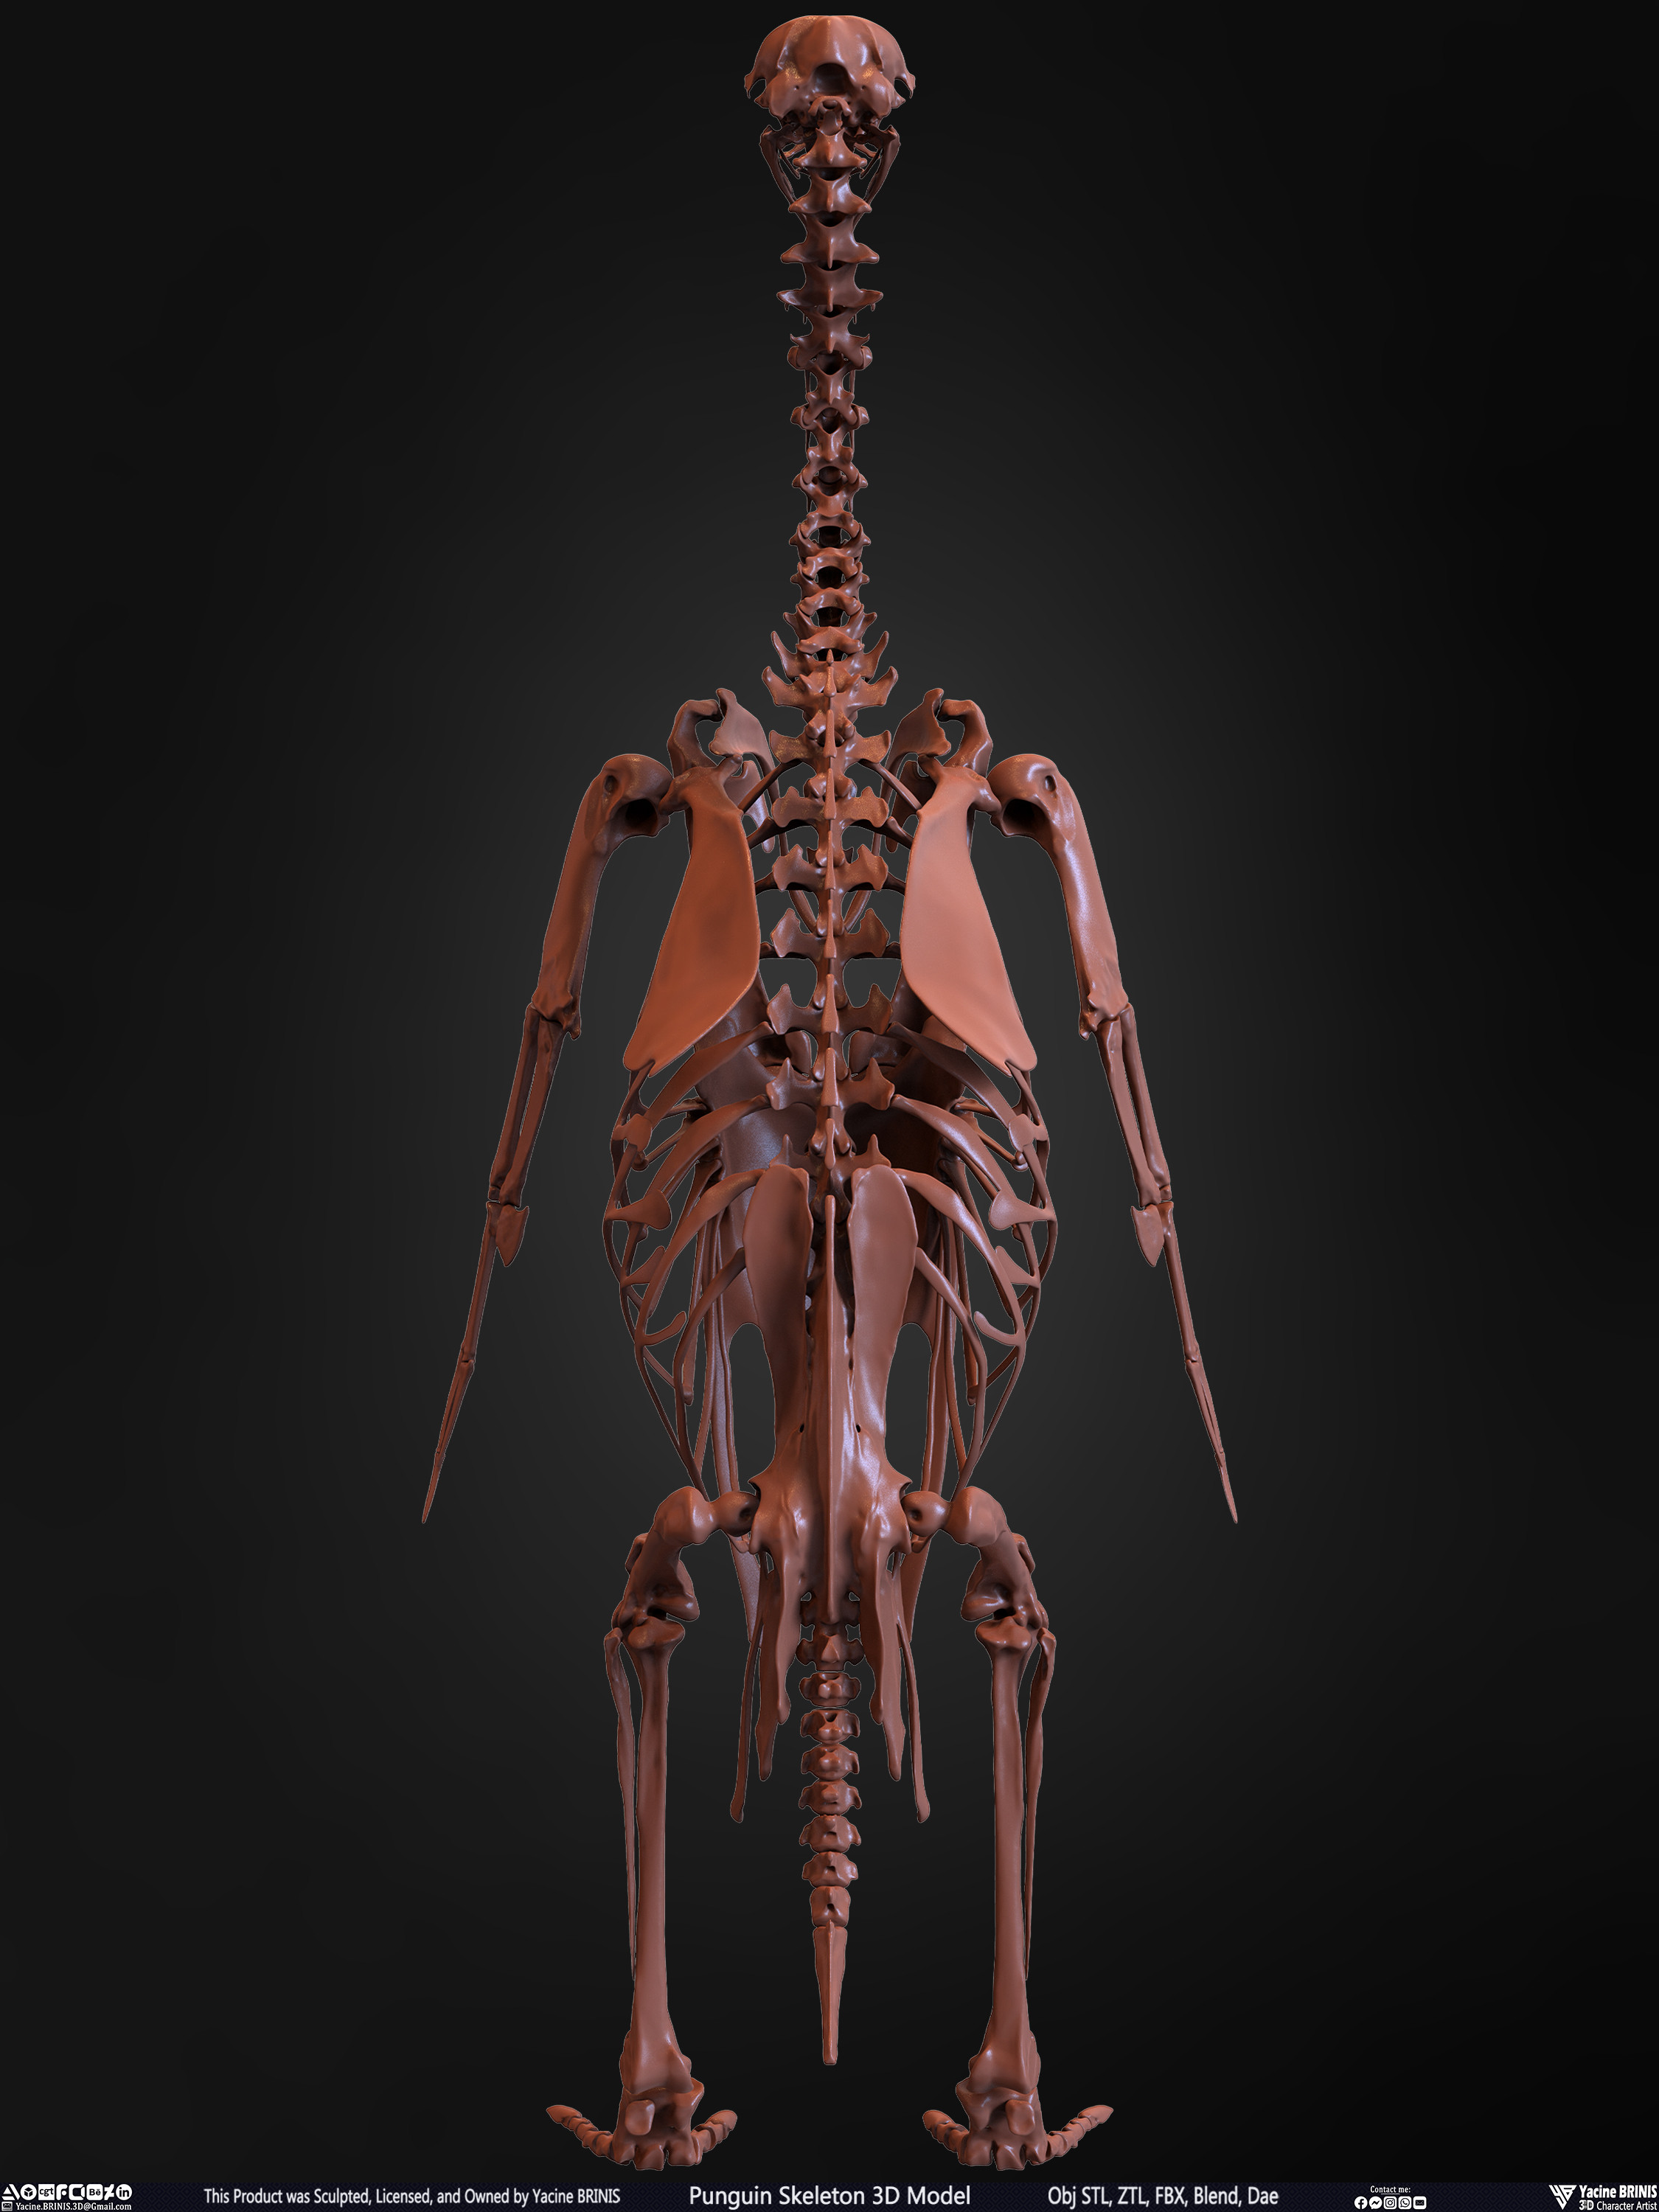 Penguin Skeleton 3D Model Sculpted by Yacine BRINIS Set 012